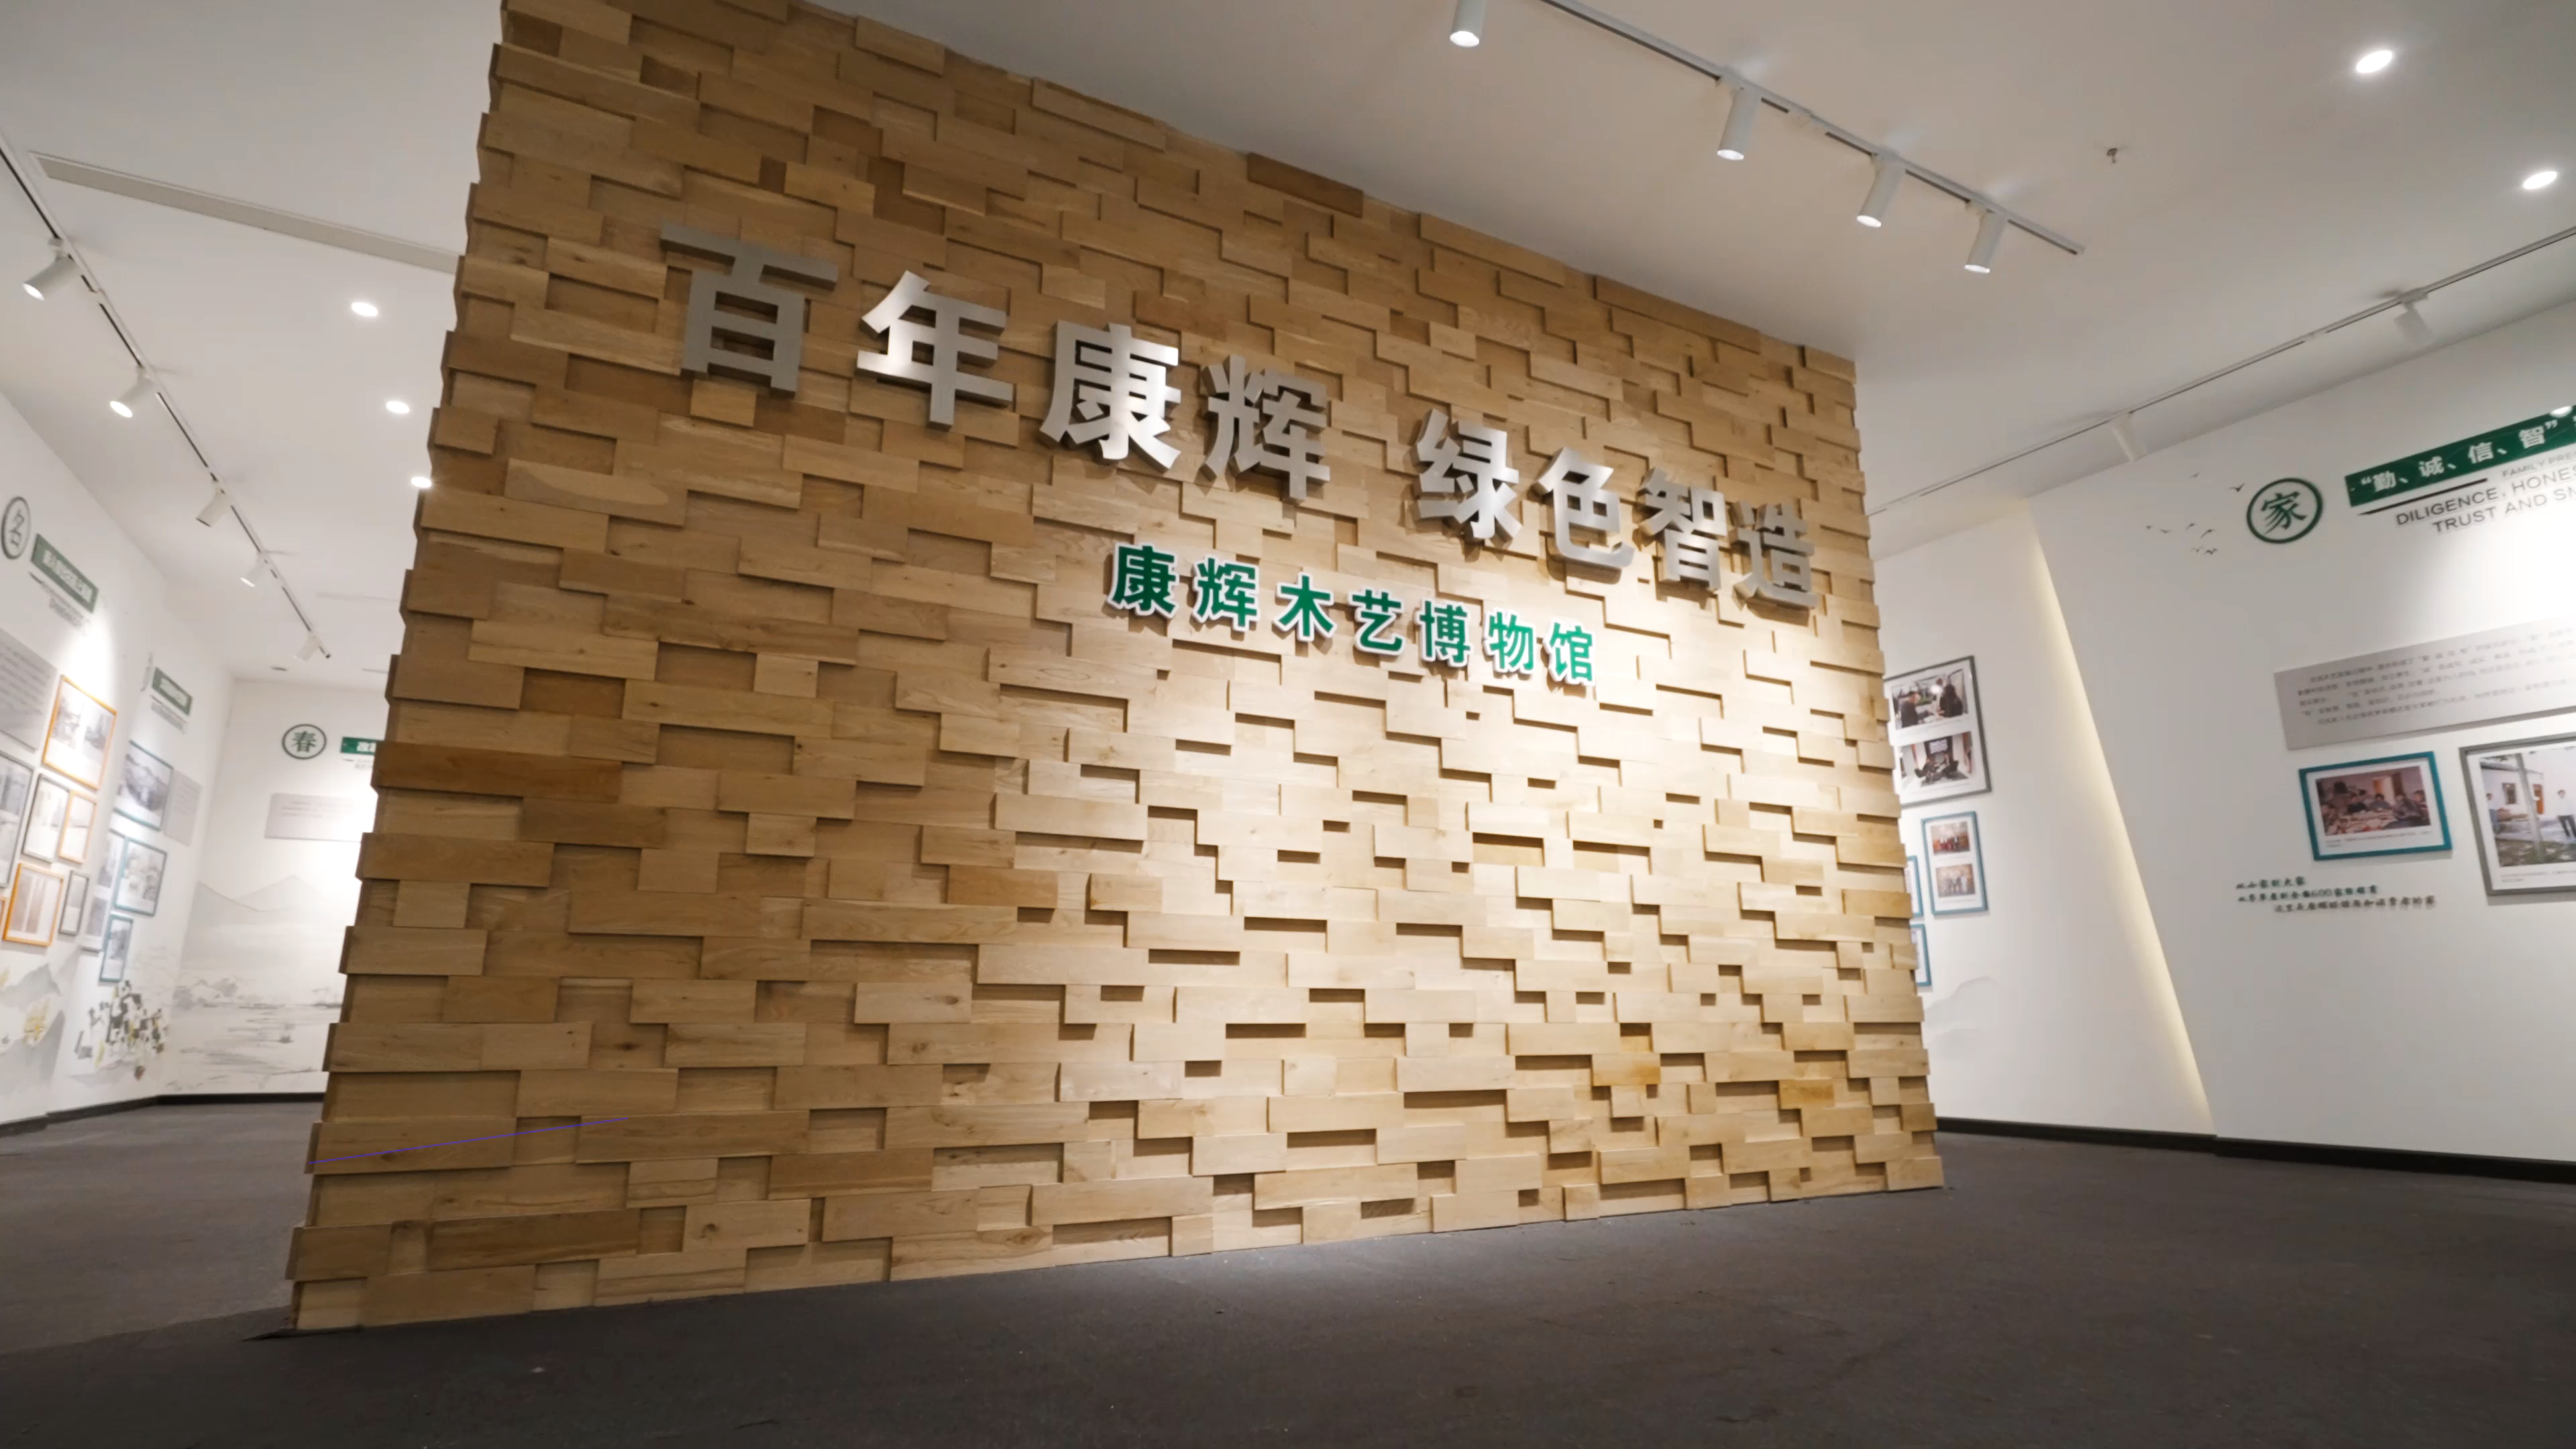 南浔，一直被誉为“中国地板之都”，本土企业以共同向上为目标推动着产业的核心竞争力，在这样良性的竞争中，涌现出了一批独具话语权和代表性的品牌。